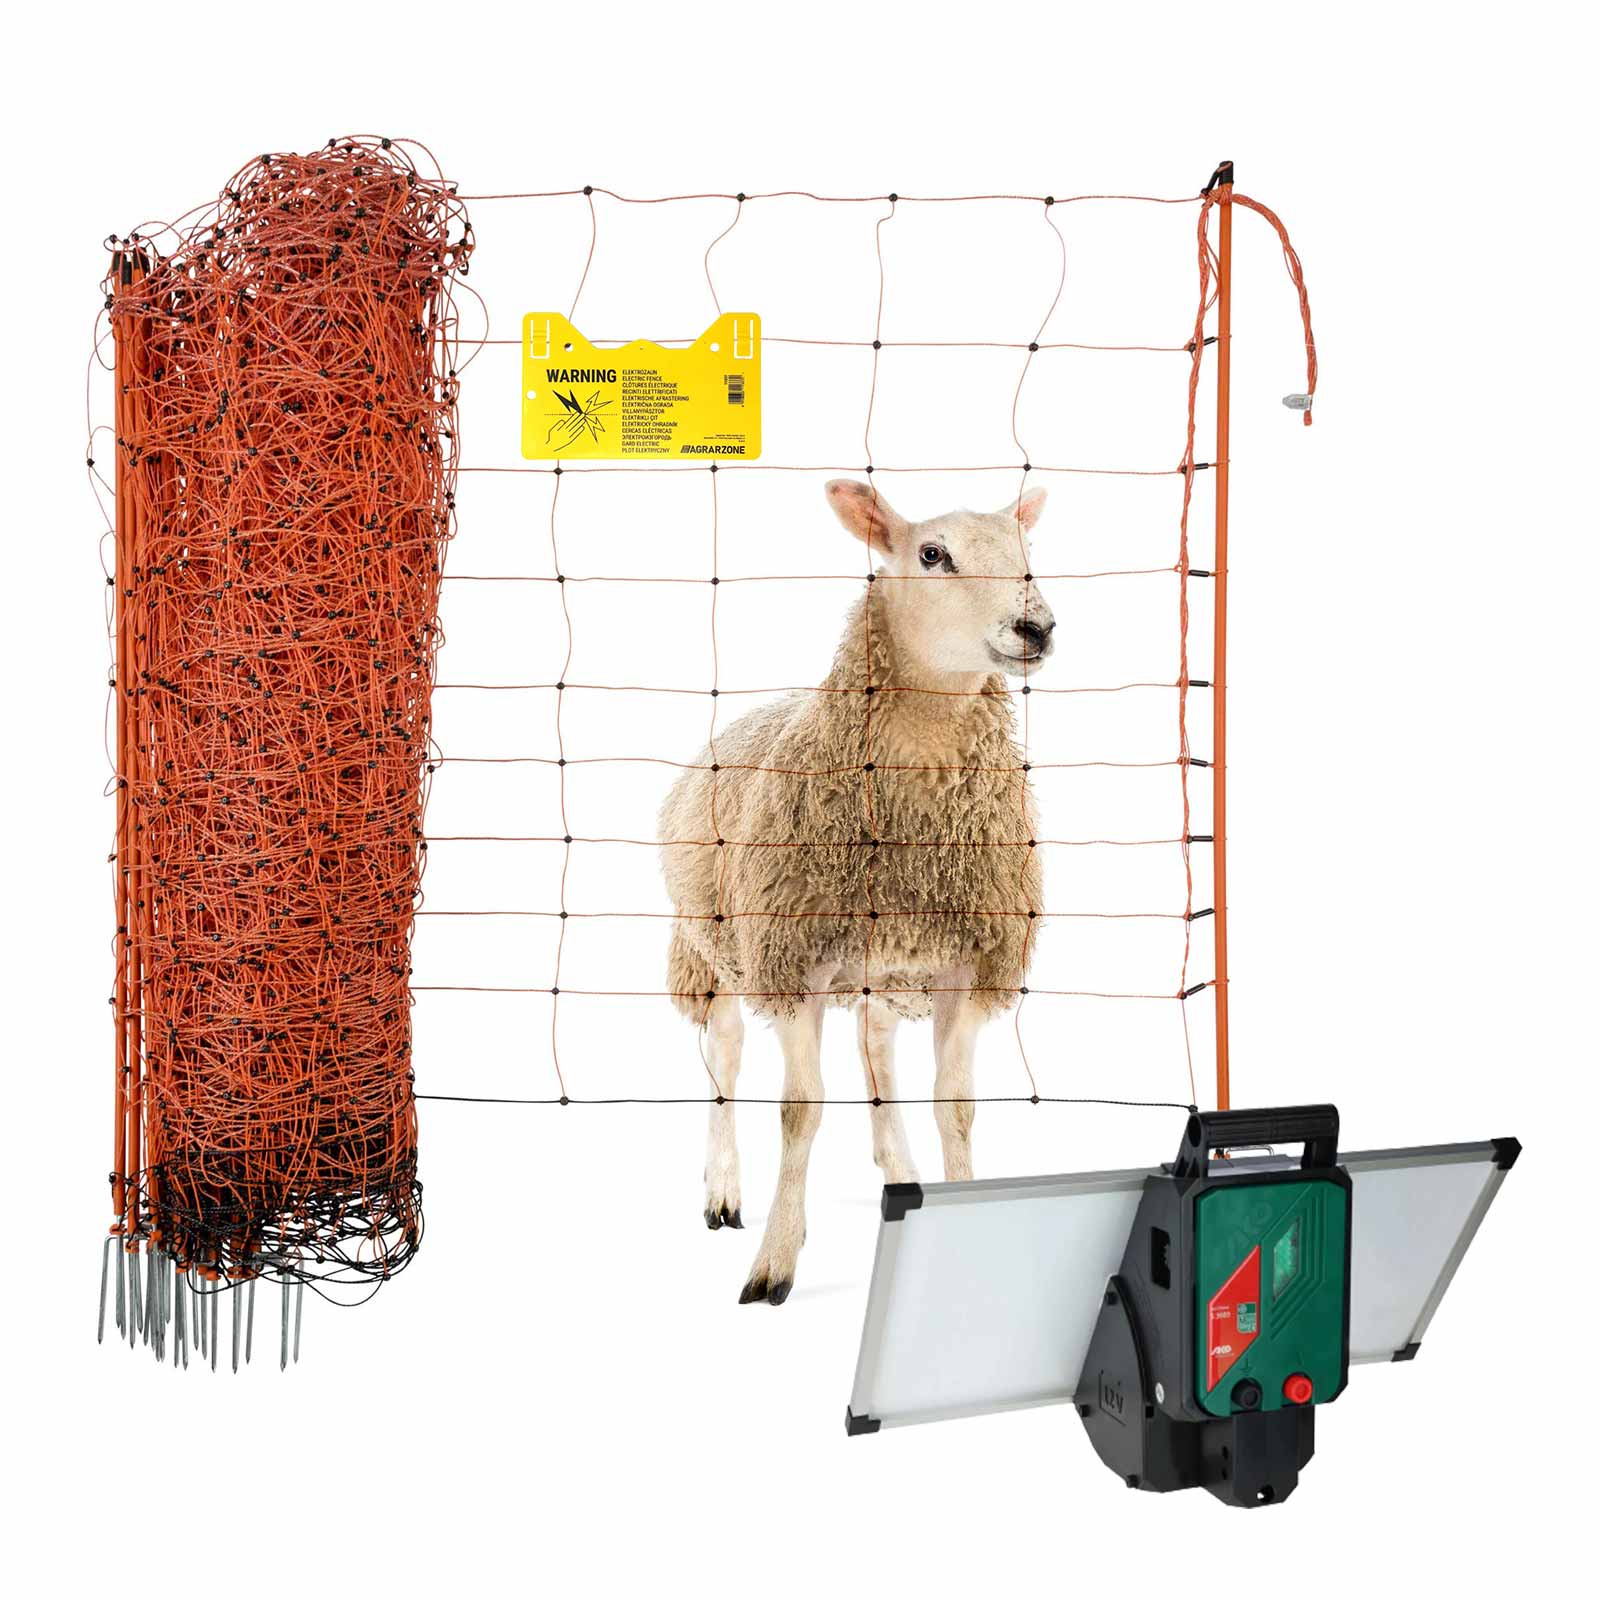 Agrarzone kit recinto elettrico per pecore Sun Power 3000 fotovoltaico 12V, 4,2J, rete 50m x 90cm, arancione-giallo